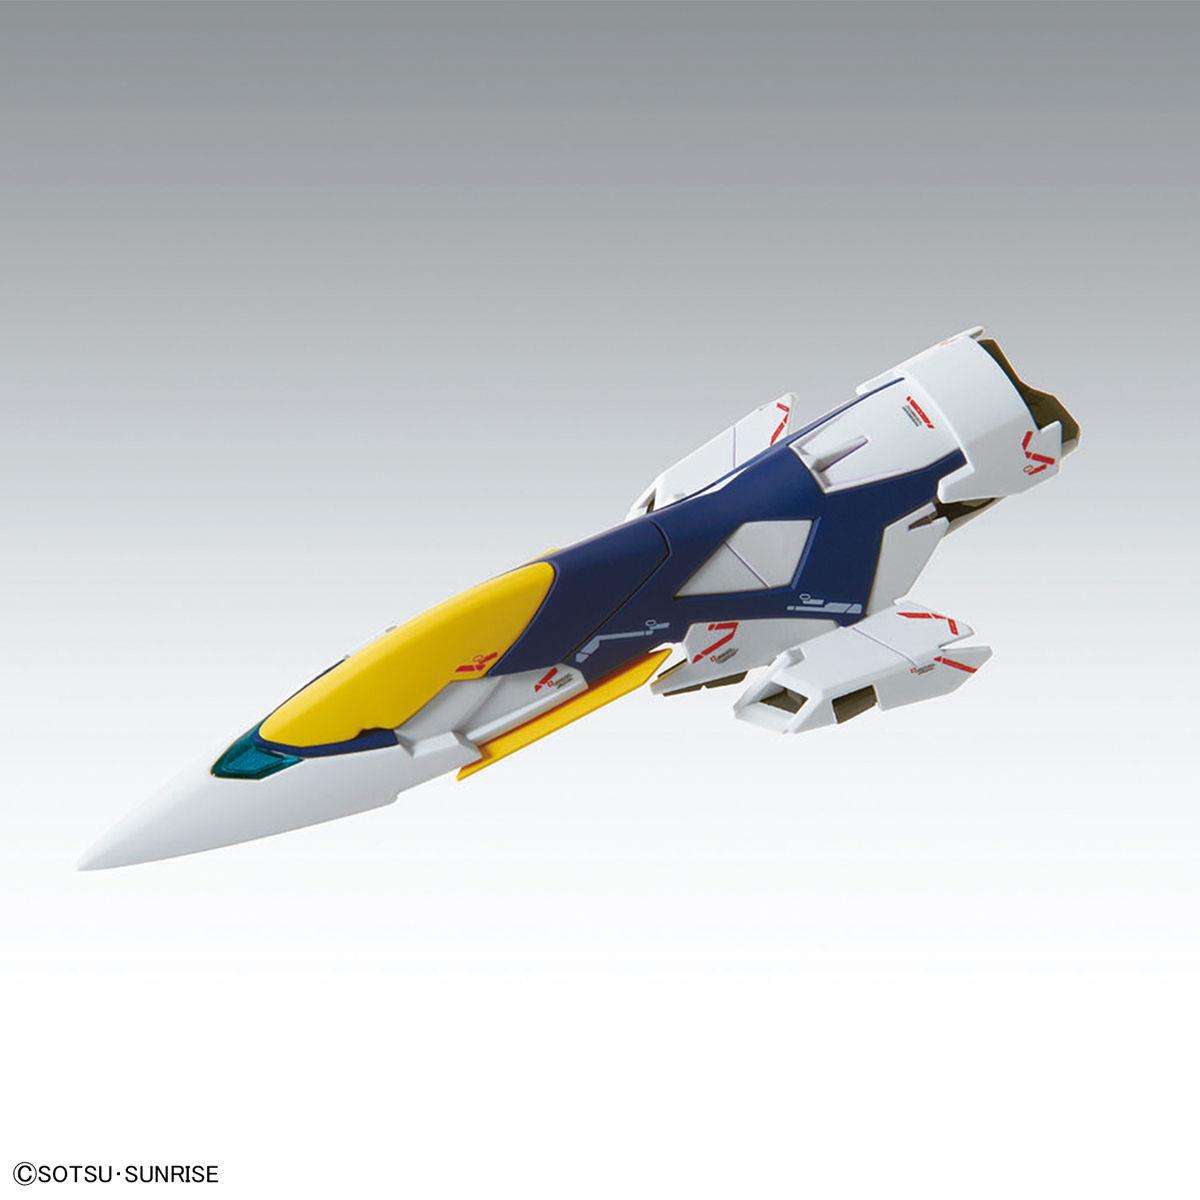 Gundam: Wing Gundam Zero EW Ver. Ka MG Model